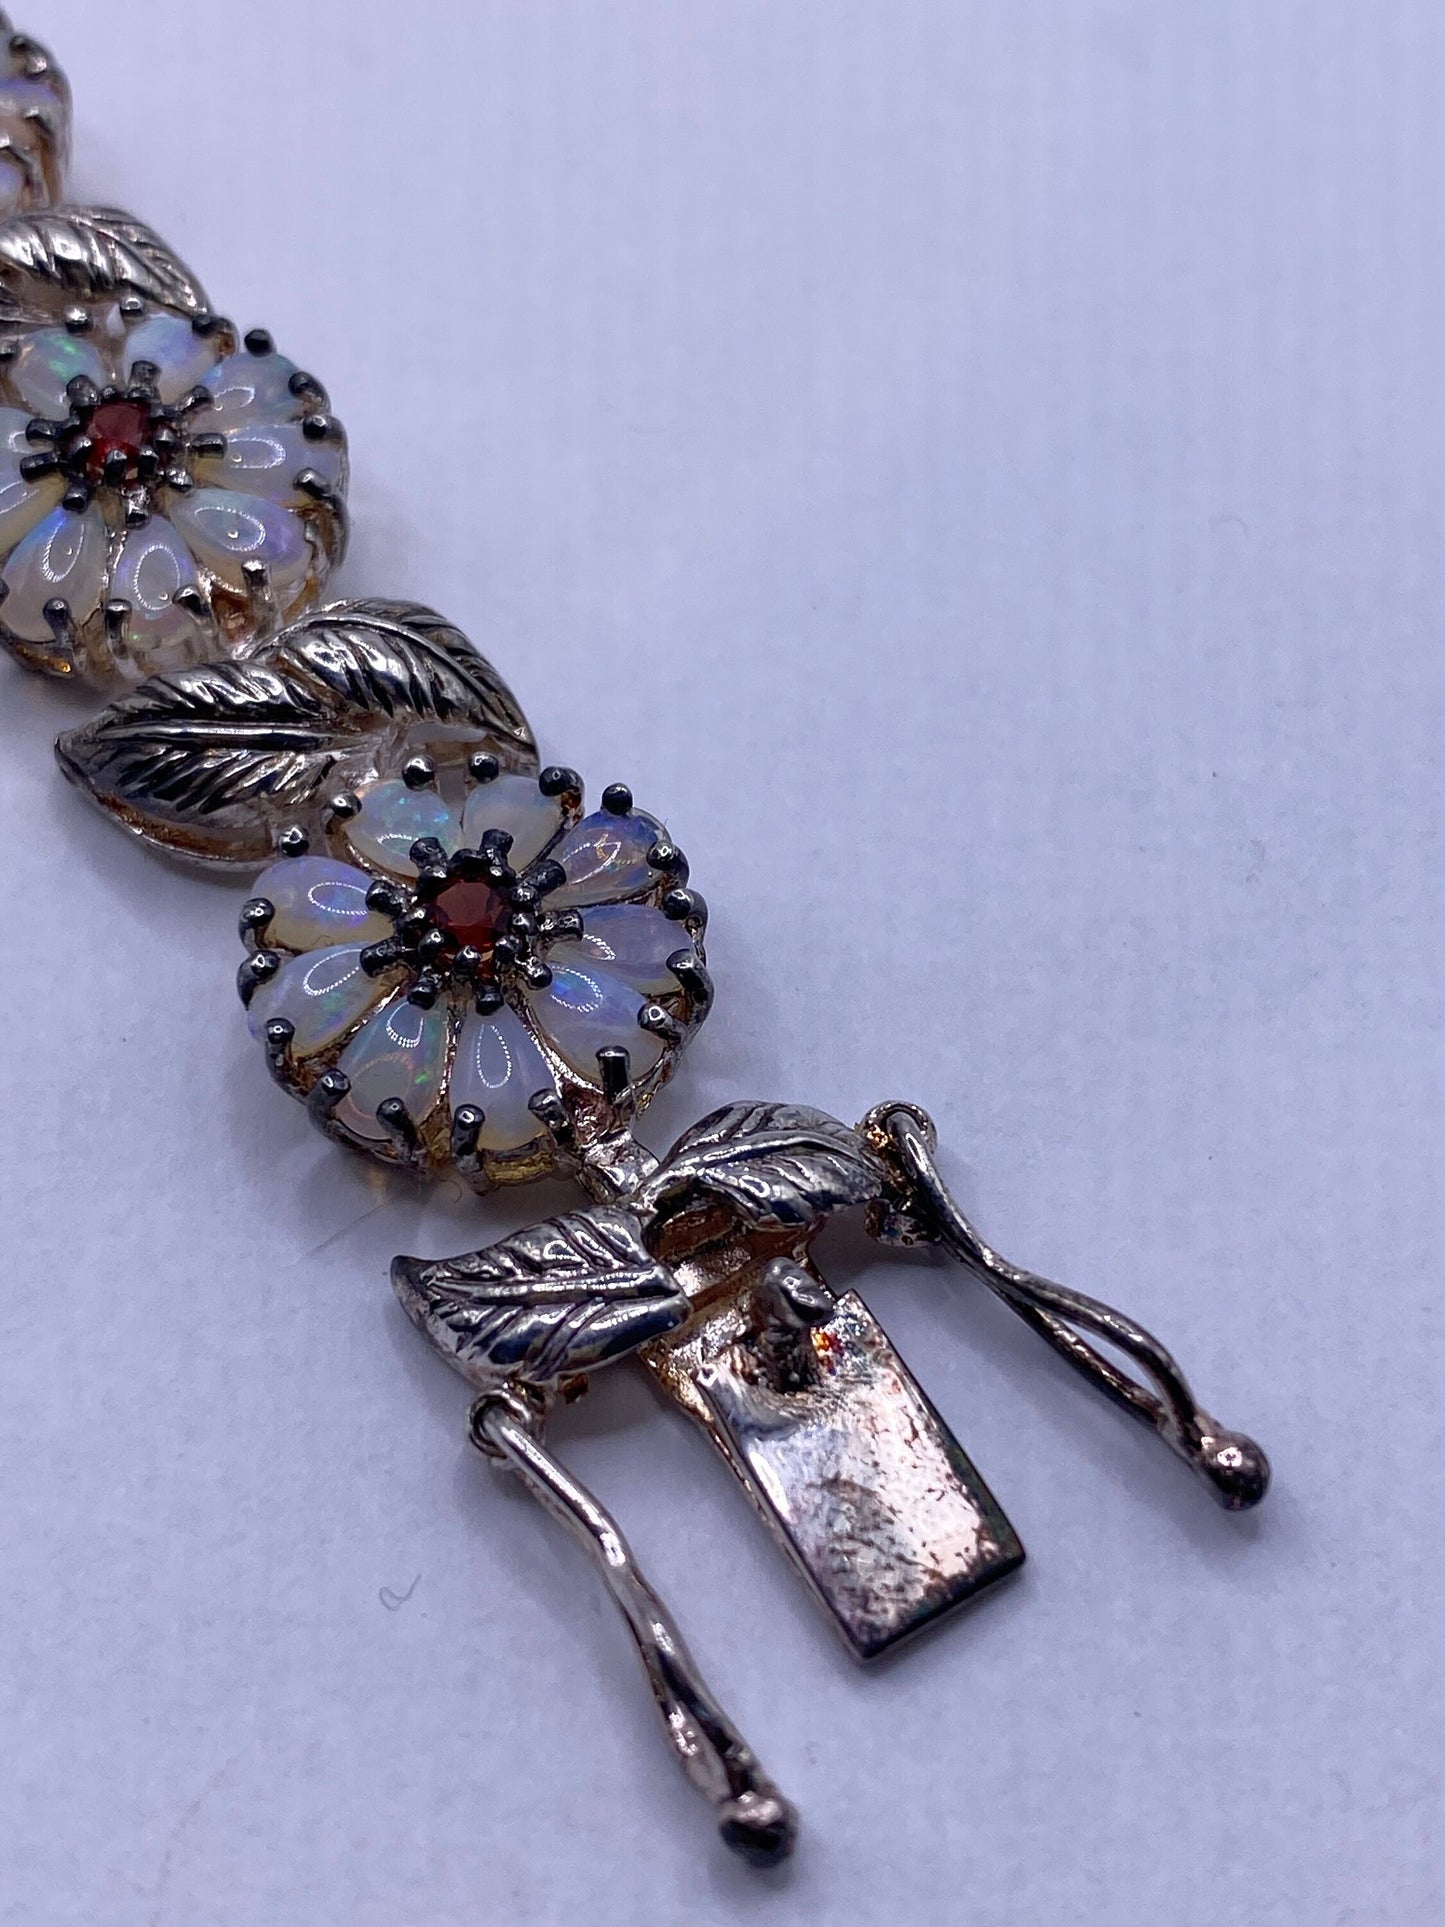 Vintage Opal Flower Bracelet 925 Sterling Silver